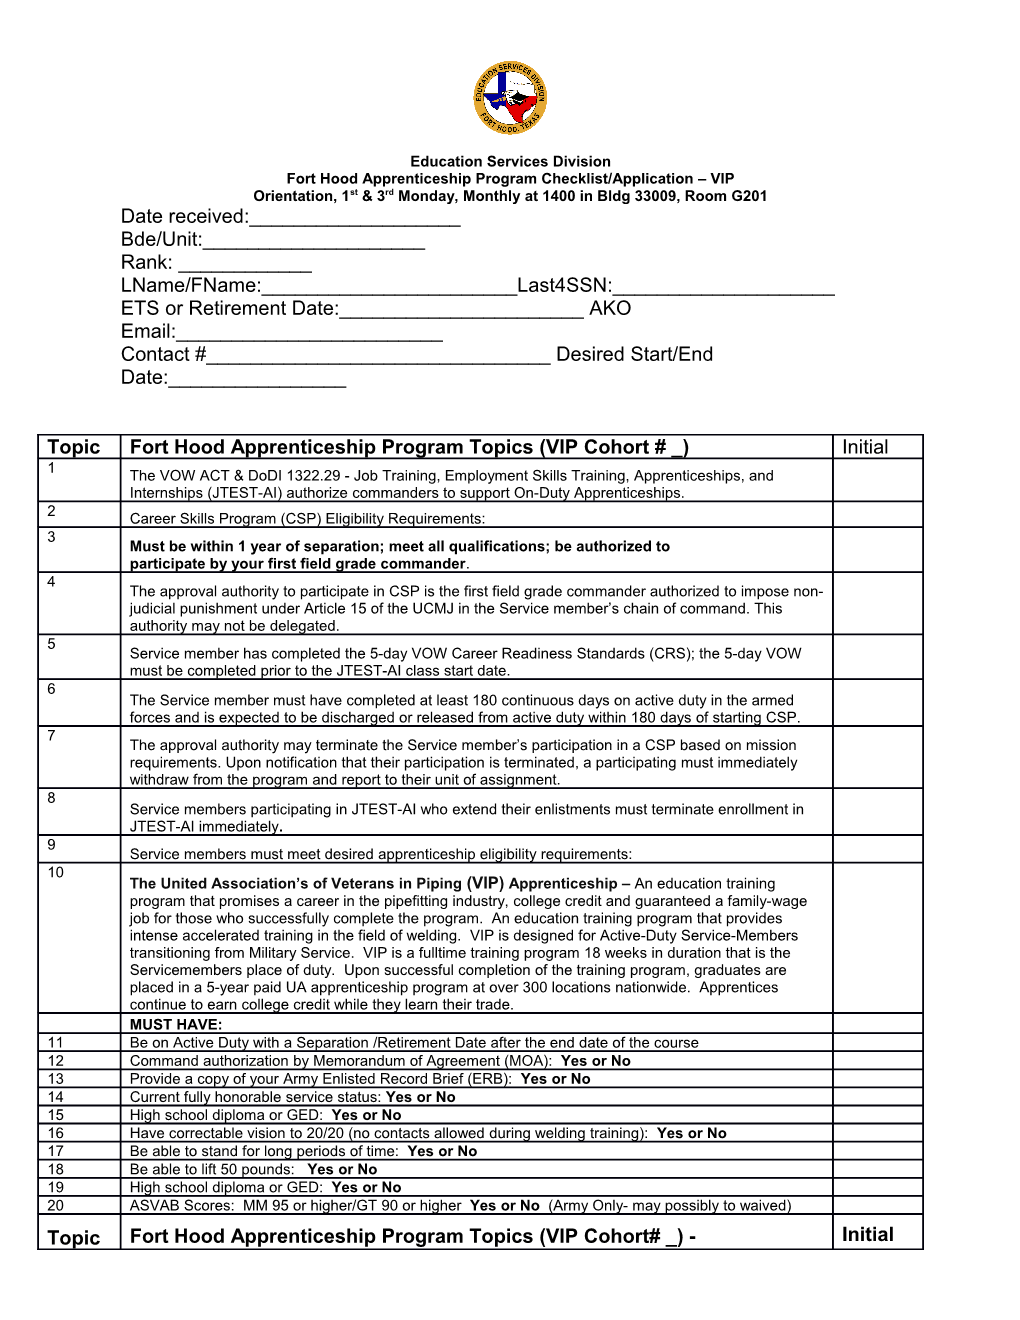 Fort Hood Apprenticeship Program Checklist/Application VIP